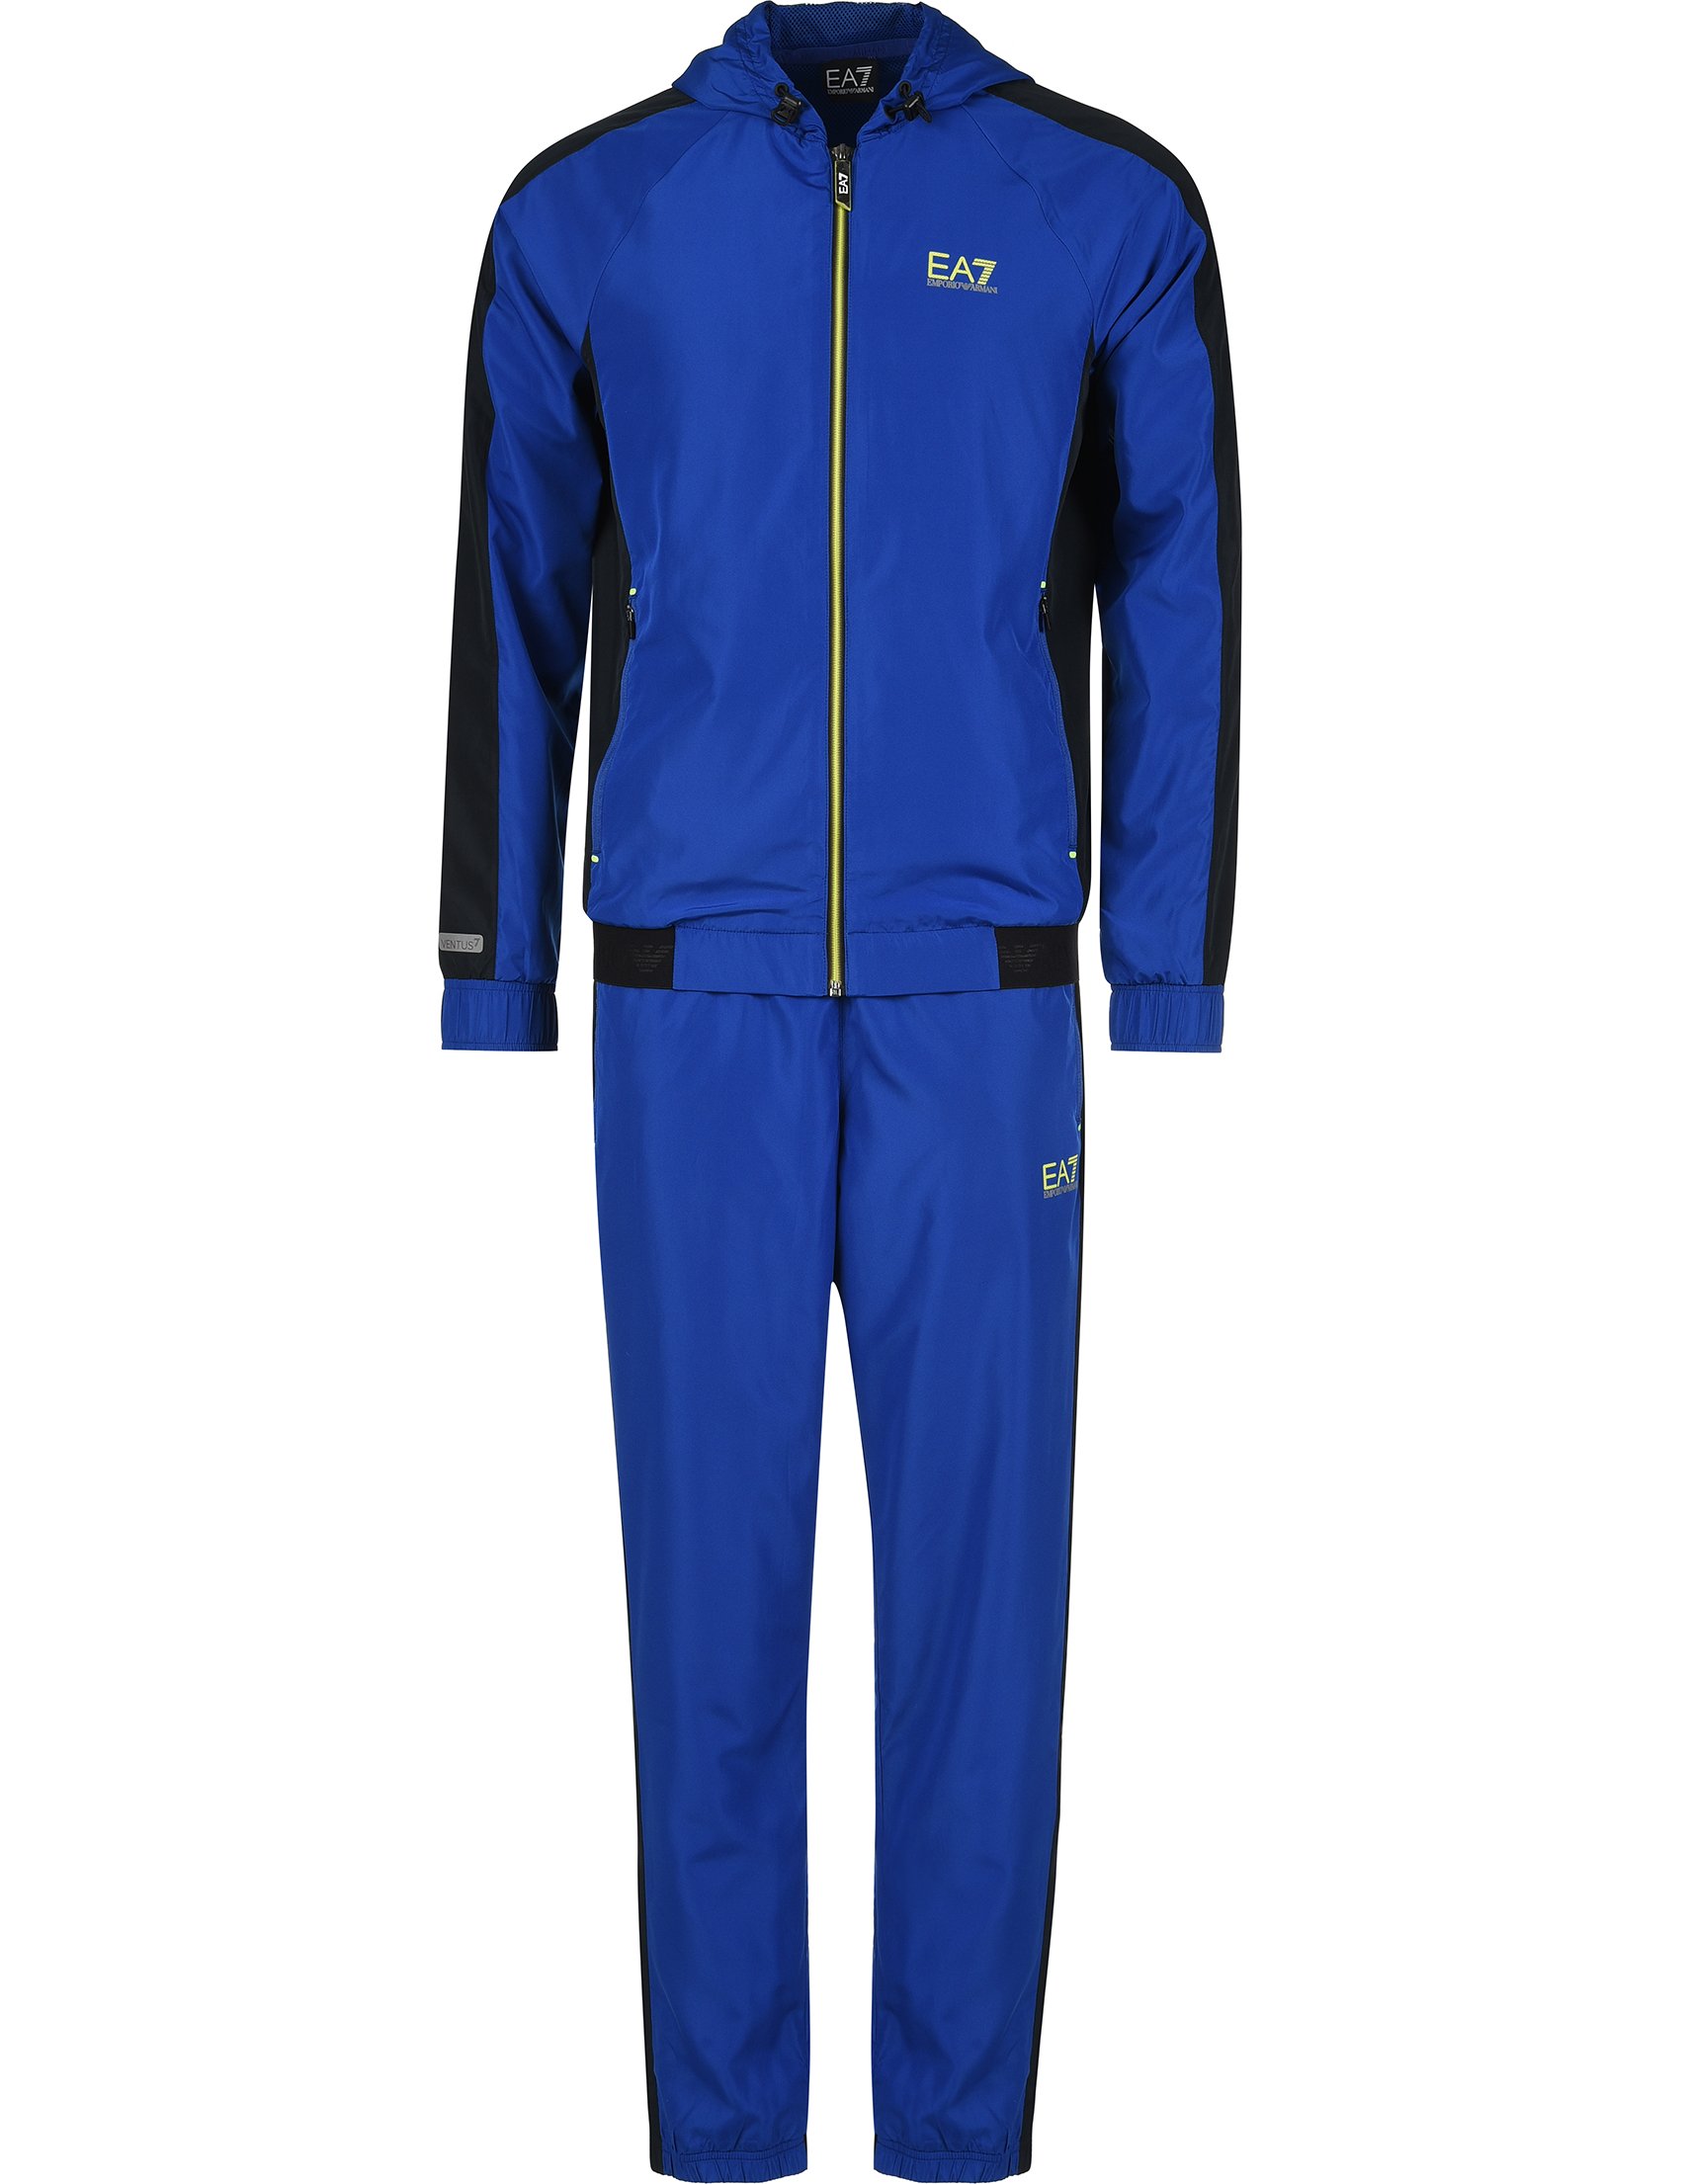 Эластиковый спортивный костюм. Ea7 спортивный костюм мужской синий эластиковый. Ea7 Emporio Armani костюм спортивный мужской синий. Спортивный костюм мужской Armani ea7. Ea7 Emporio Armani спортивный костюм мужской.